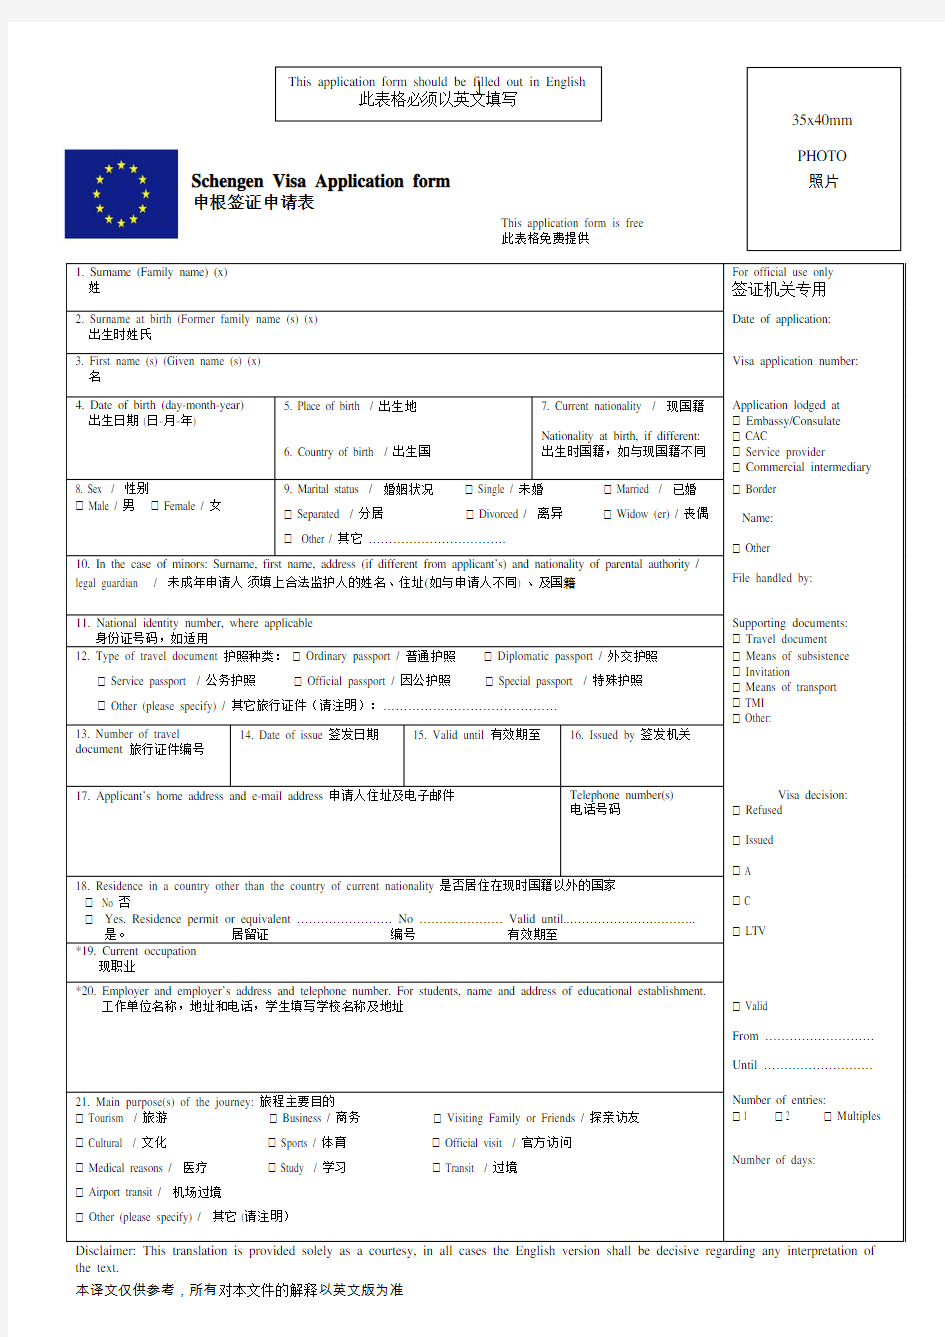 2017年申根签证申请表